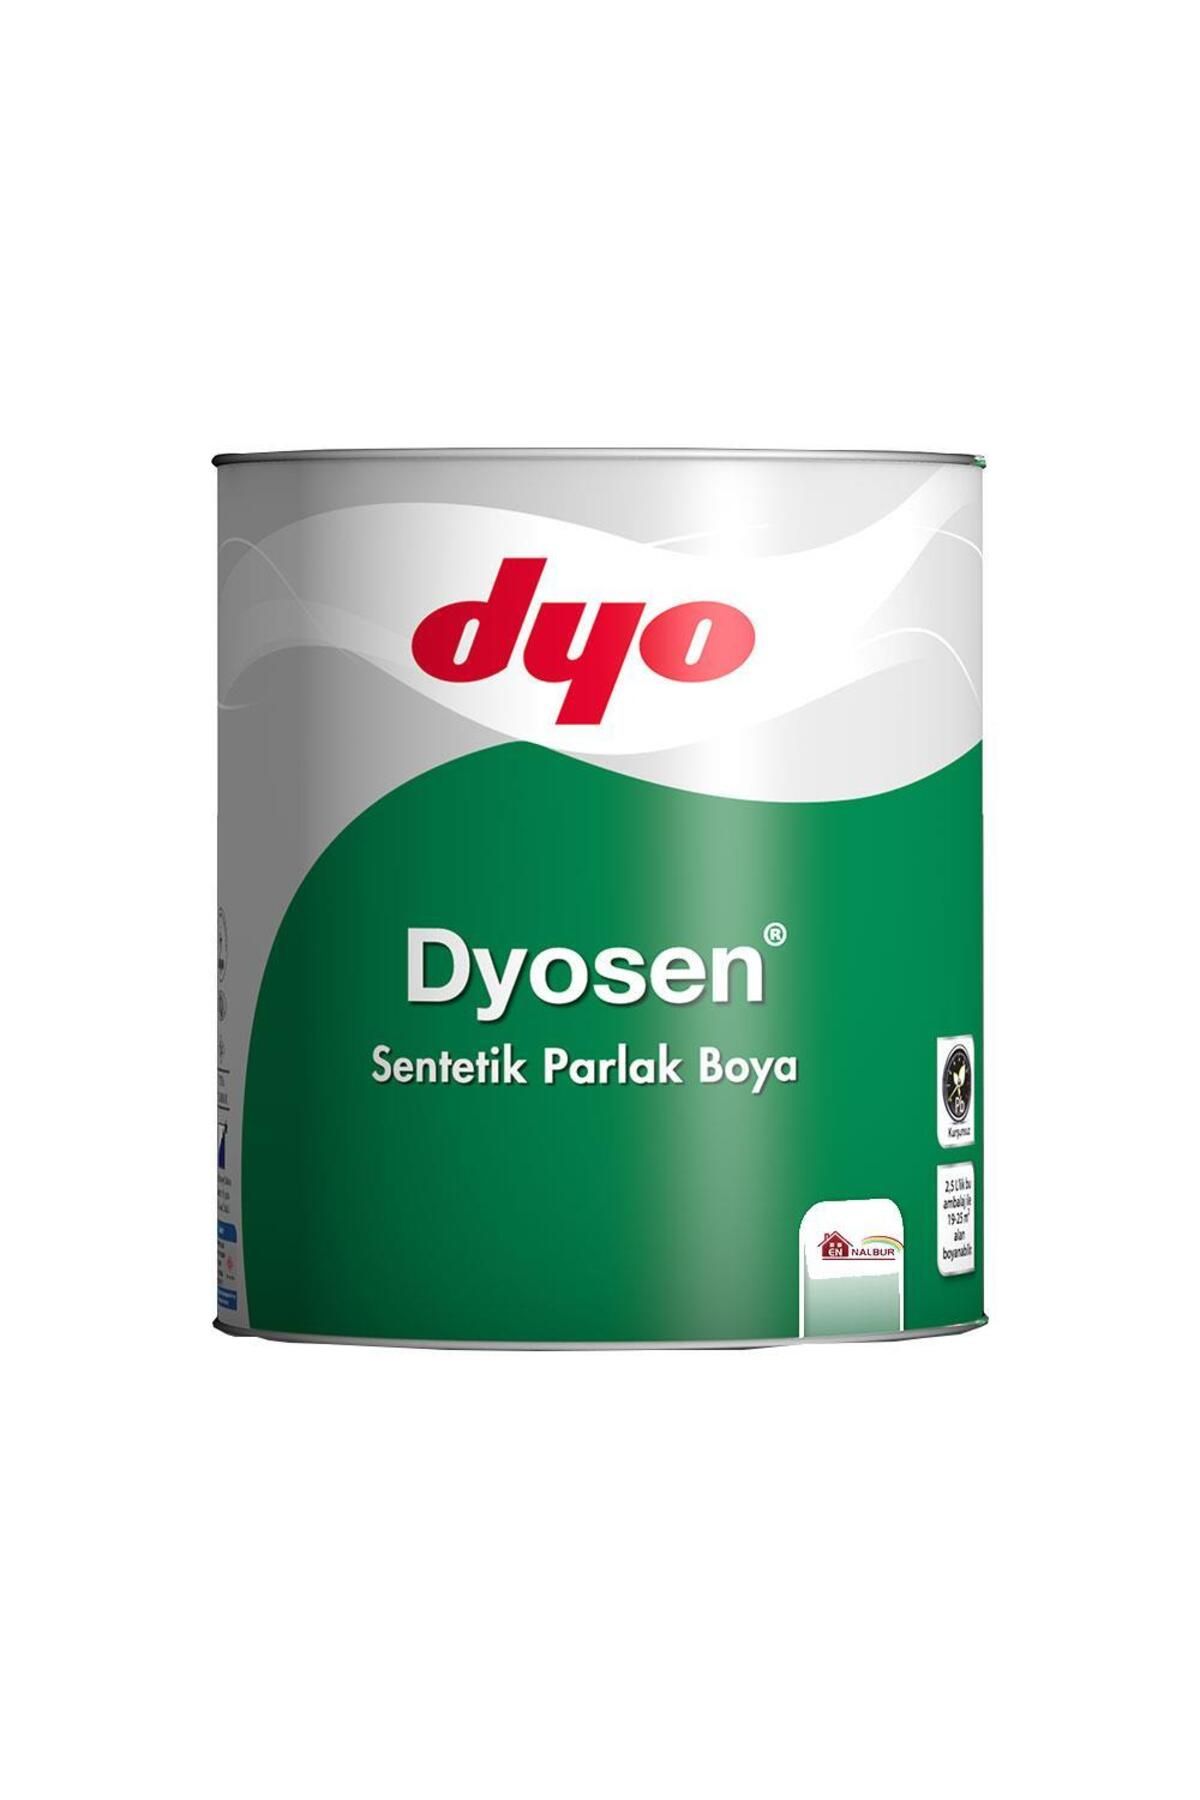 Dyo Dyosen Sentetik Parlak Boya 2,5 Lt Kumsal - 59453